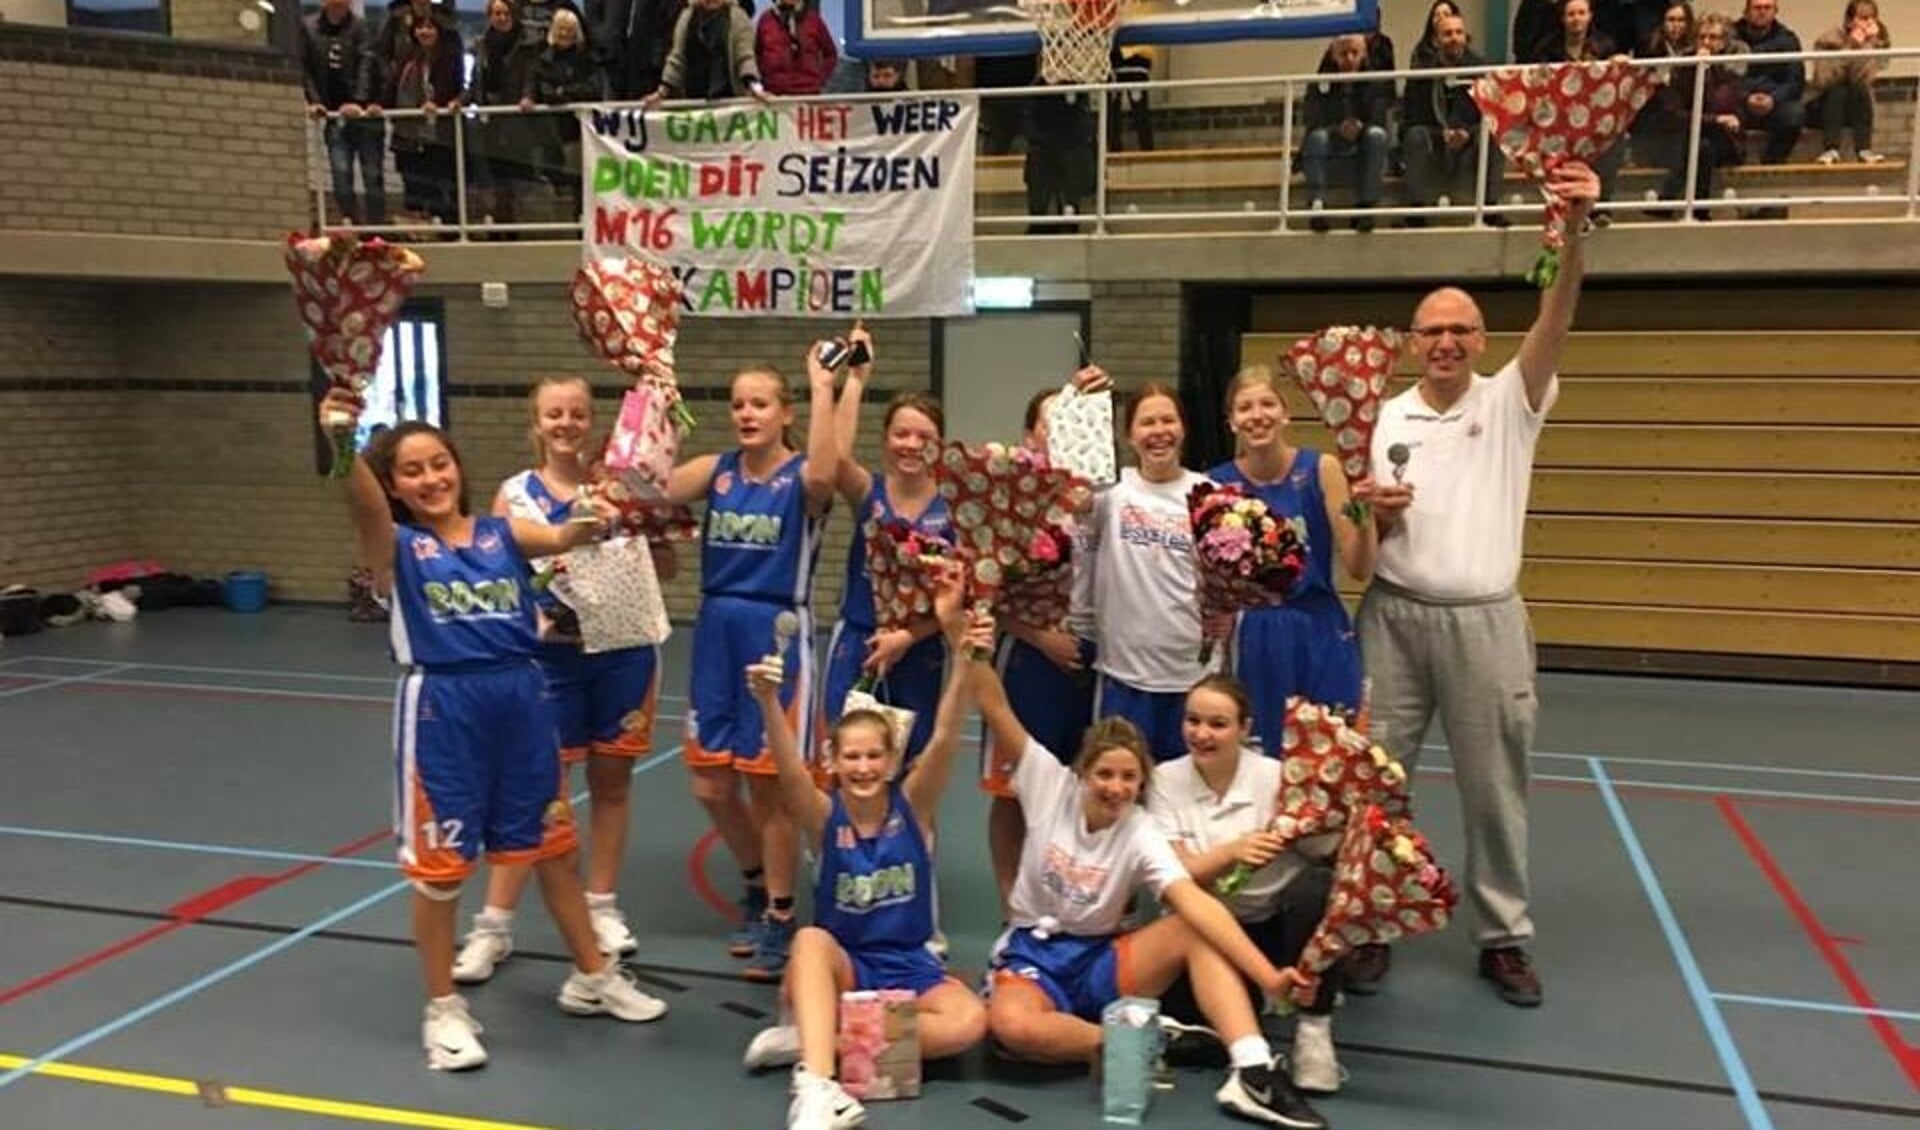 Het team Goba meisjes V16 van Wout Hol en Manouk Voorwerk is verdiend kampioen geworden.